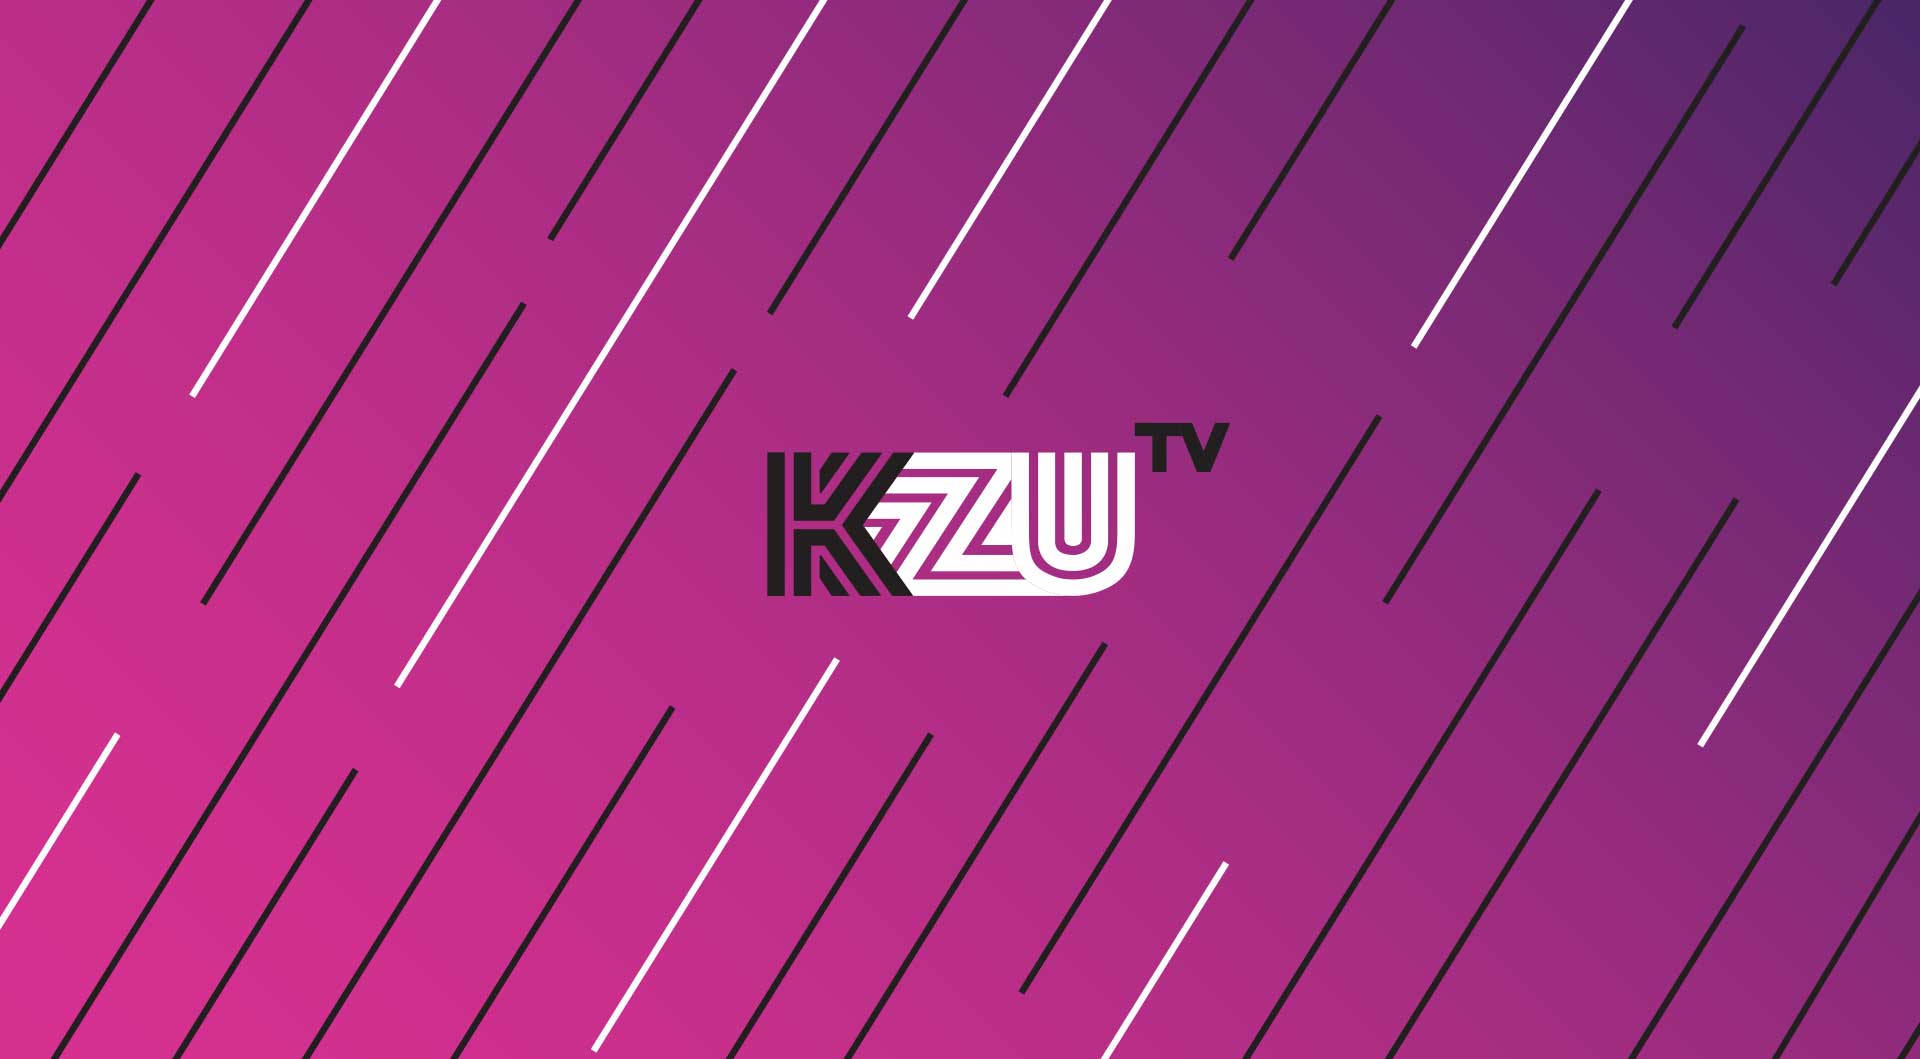 Kzu